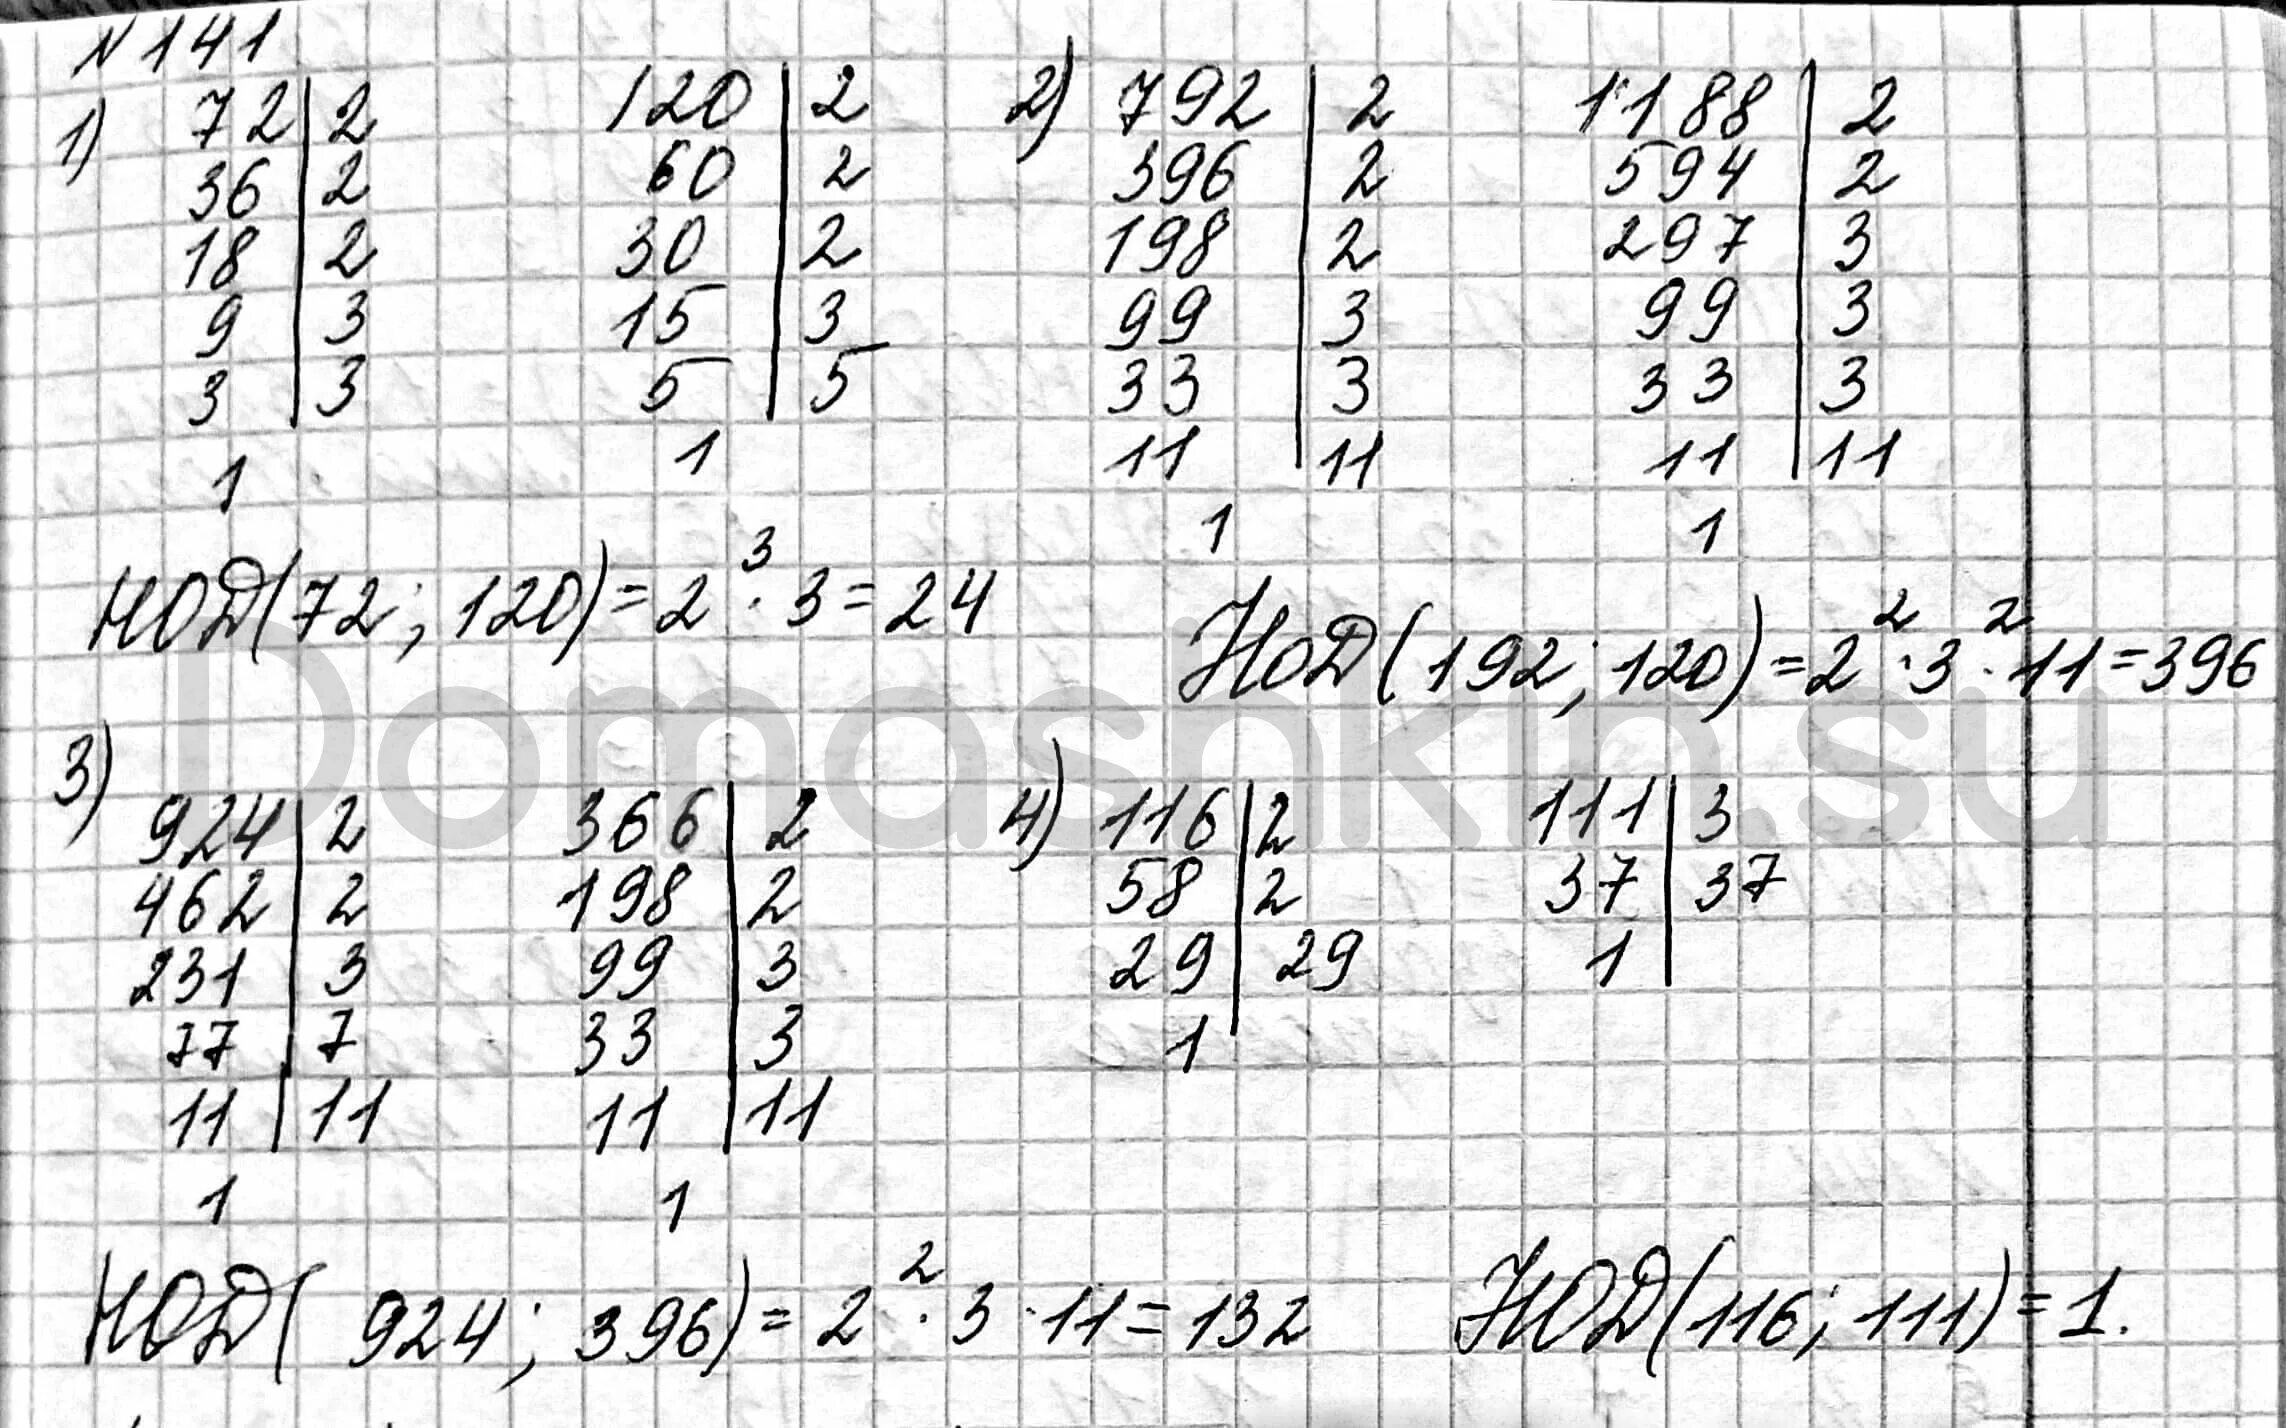 Страница 42 номер 141. Математика 6 класс Мерзляк номер 141. Гдз по математике 6 класс номер 141. Наибольший общий делитель чисел 792 и 1188. Наибольший общий делитель чисел 924 и 396.